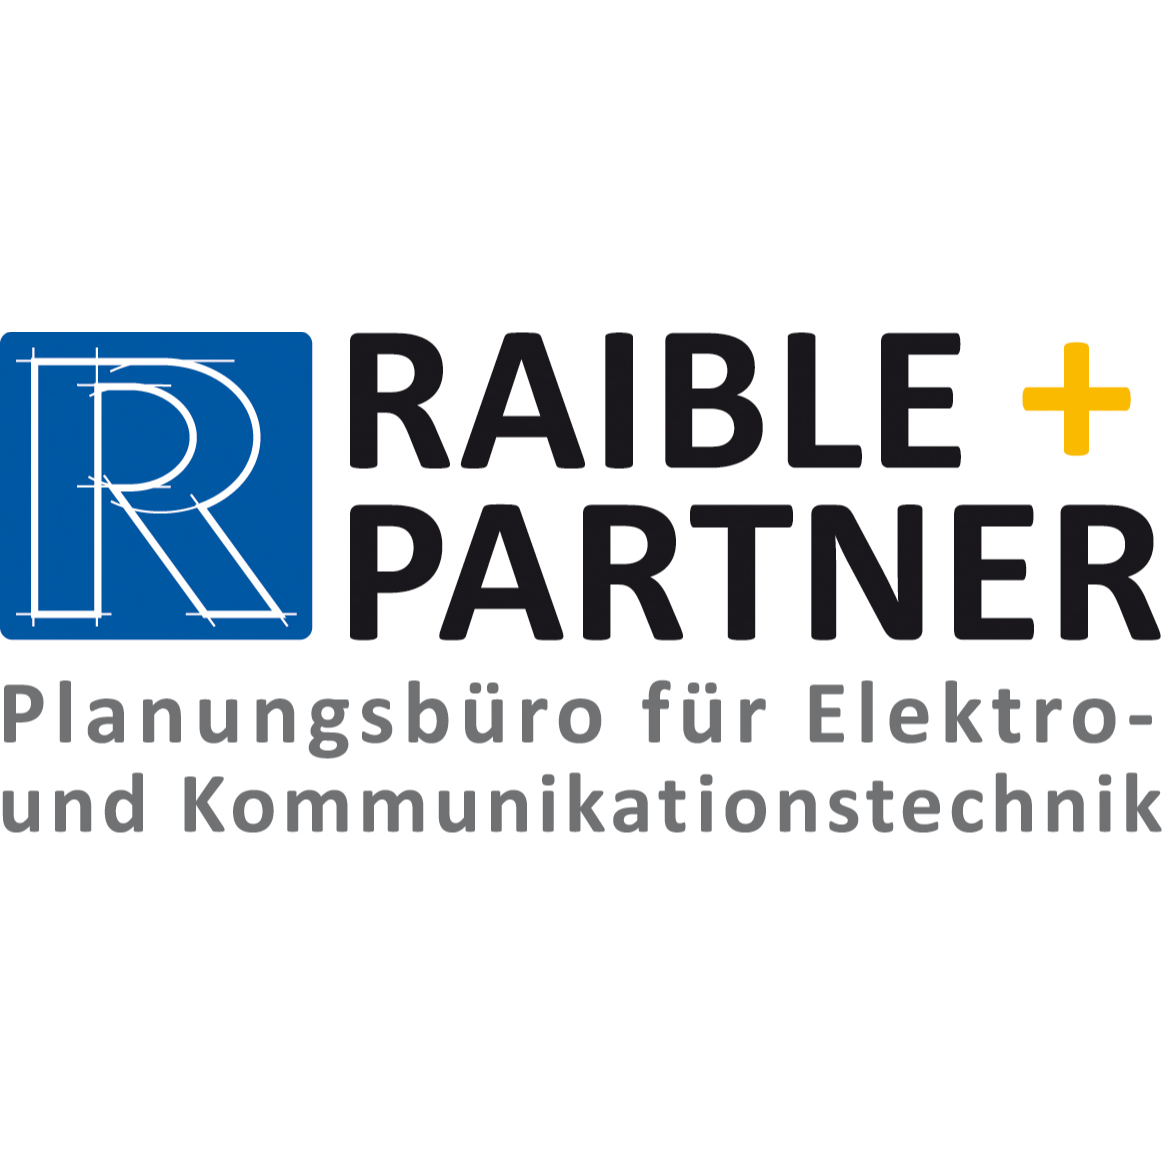 Raible u. Partner GmbH & Co. KG Planungsbüro f. Elektro- und Kommunikationstechnik in Reutlingen - Logo